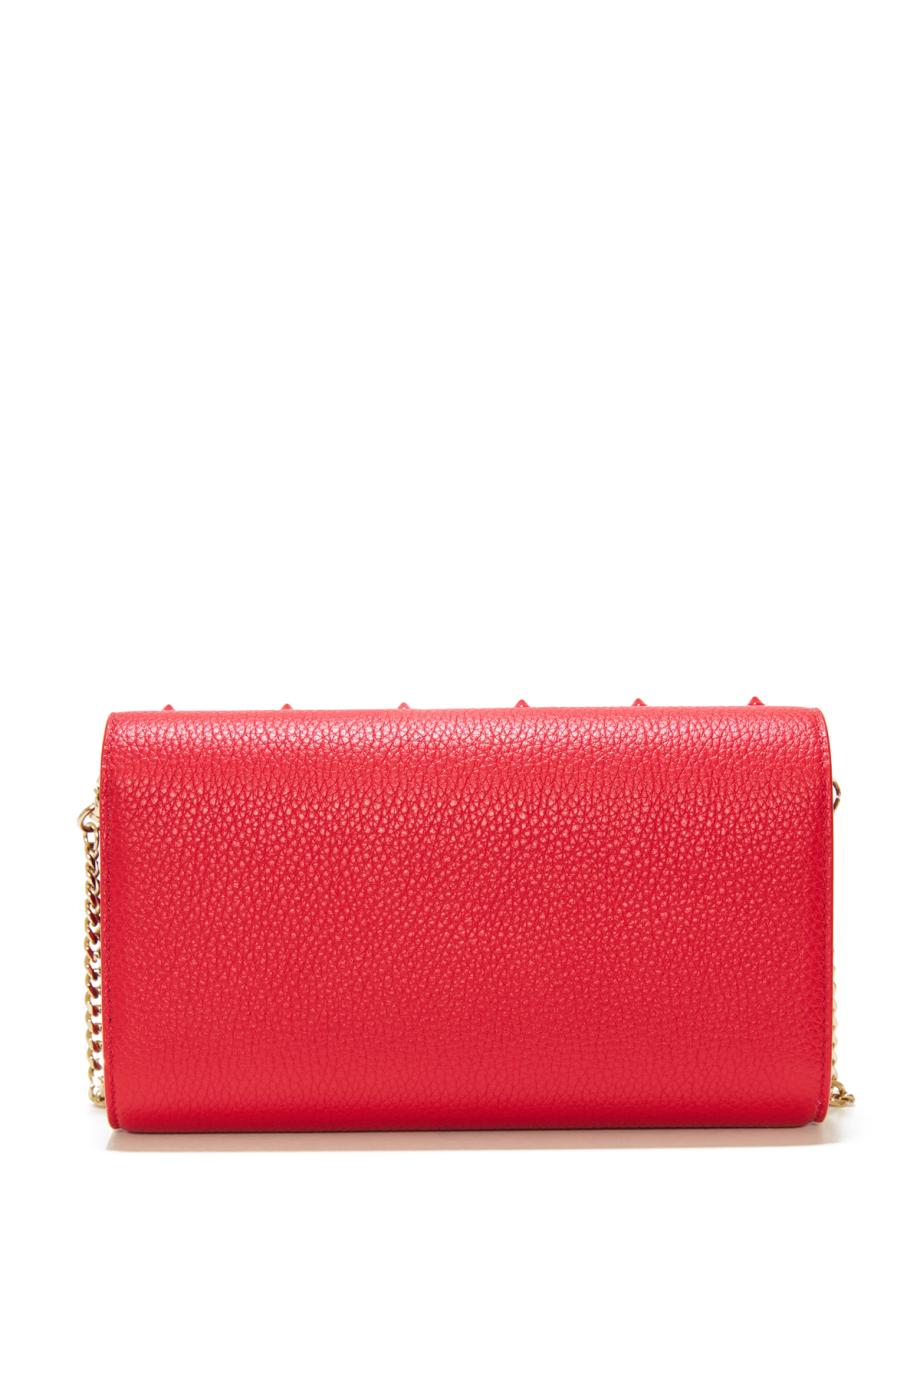 Paloma Loubinthesky embellished leather wallet